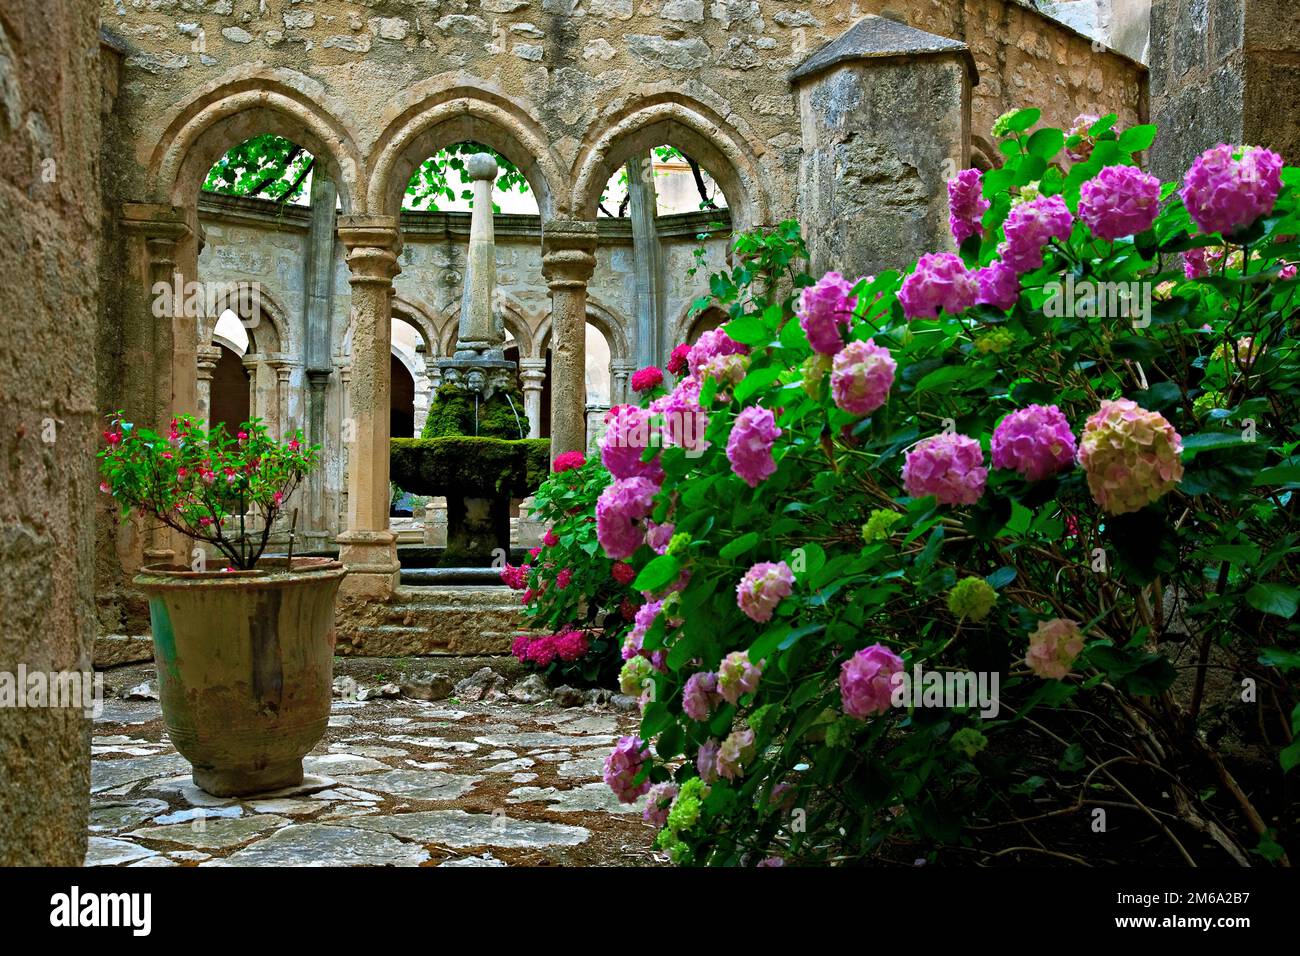 Klostergarten der Abbaye de Valmagne, Languedoc-Roussillon, France Banque D'Images